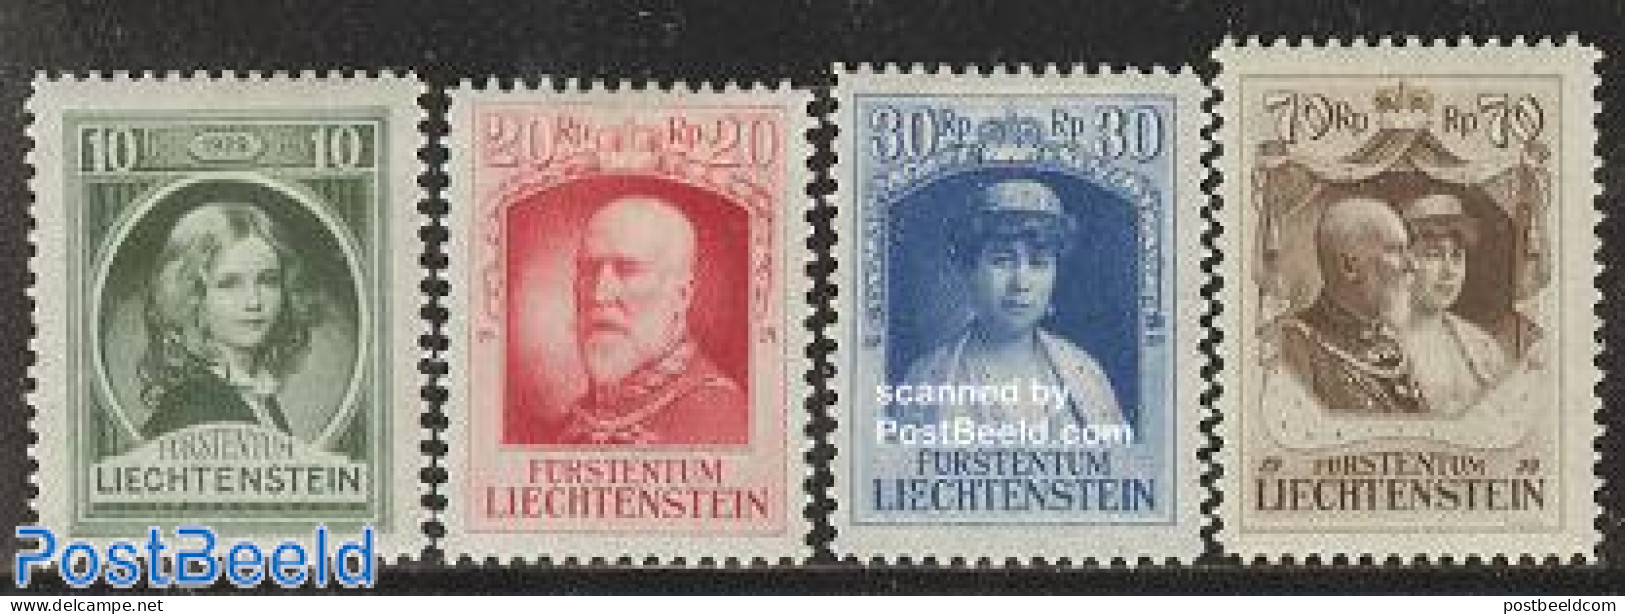 Liechtenstein 1929 Franz I 4v, Mint NH, History - Kings & Queens (Royalty) - Ongebruikt